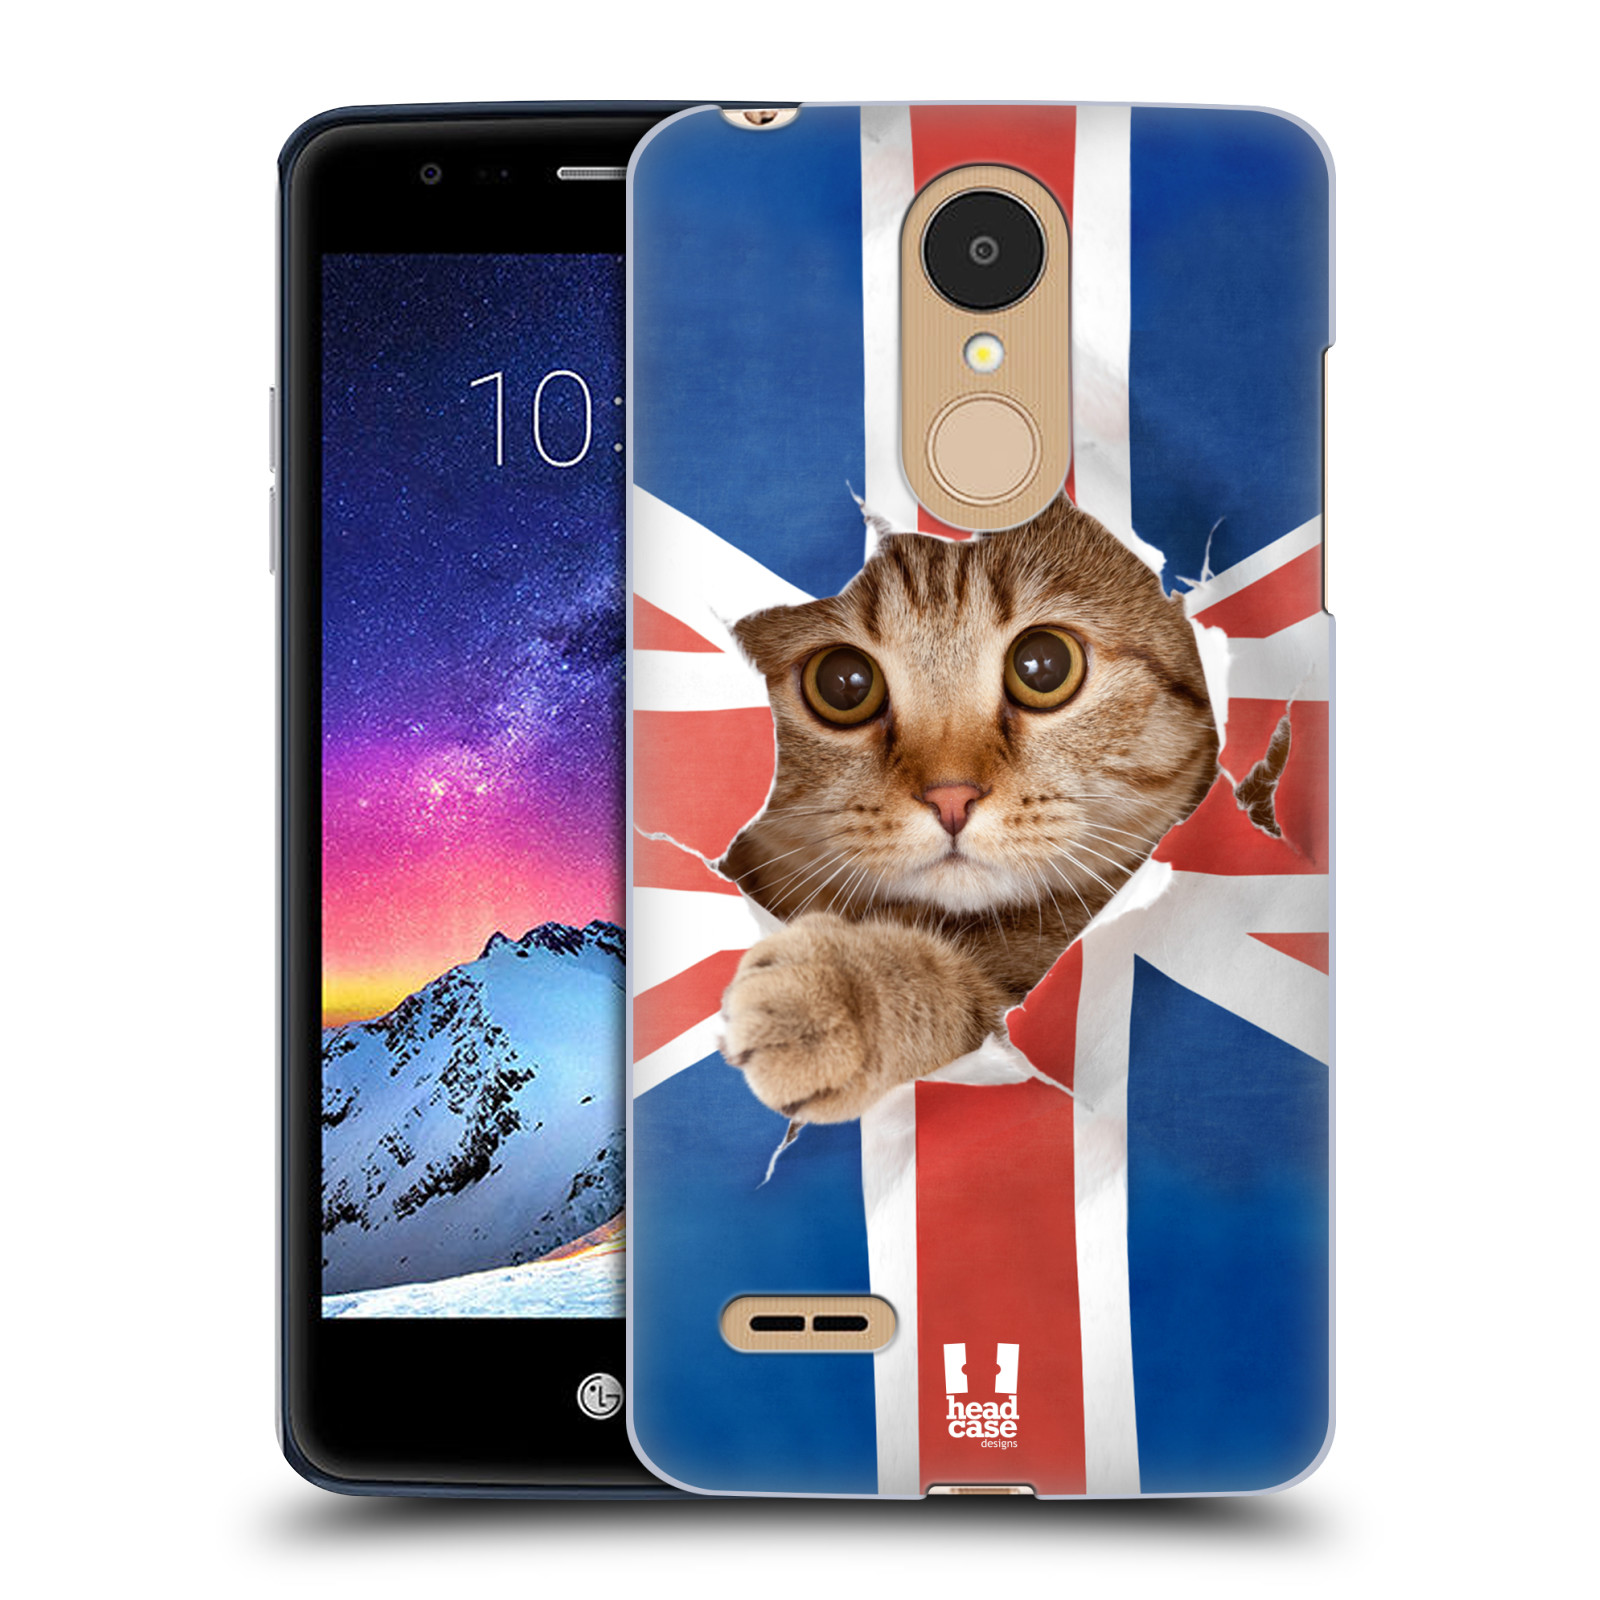 HEAD CASE plastový obal na mobil LG K9 / K8 2018 vzor Legrační zvířátka kočička a Velká Británie vlajka